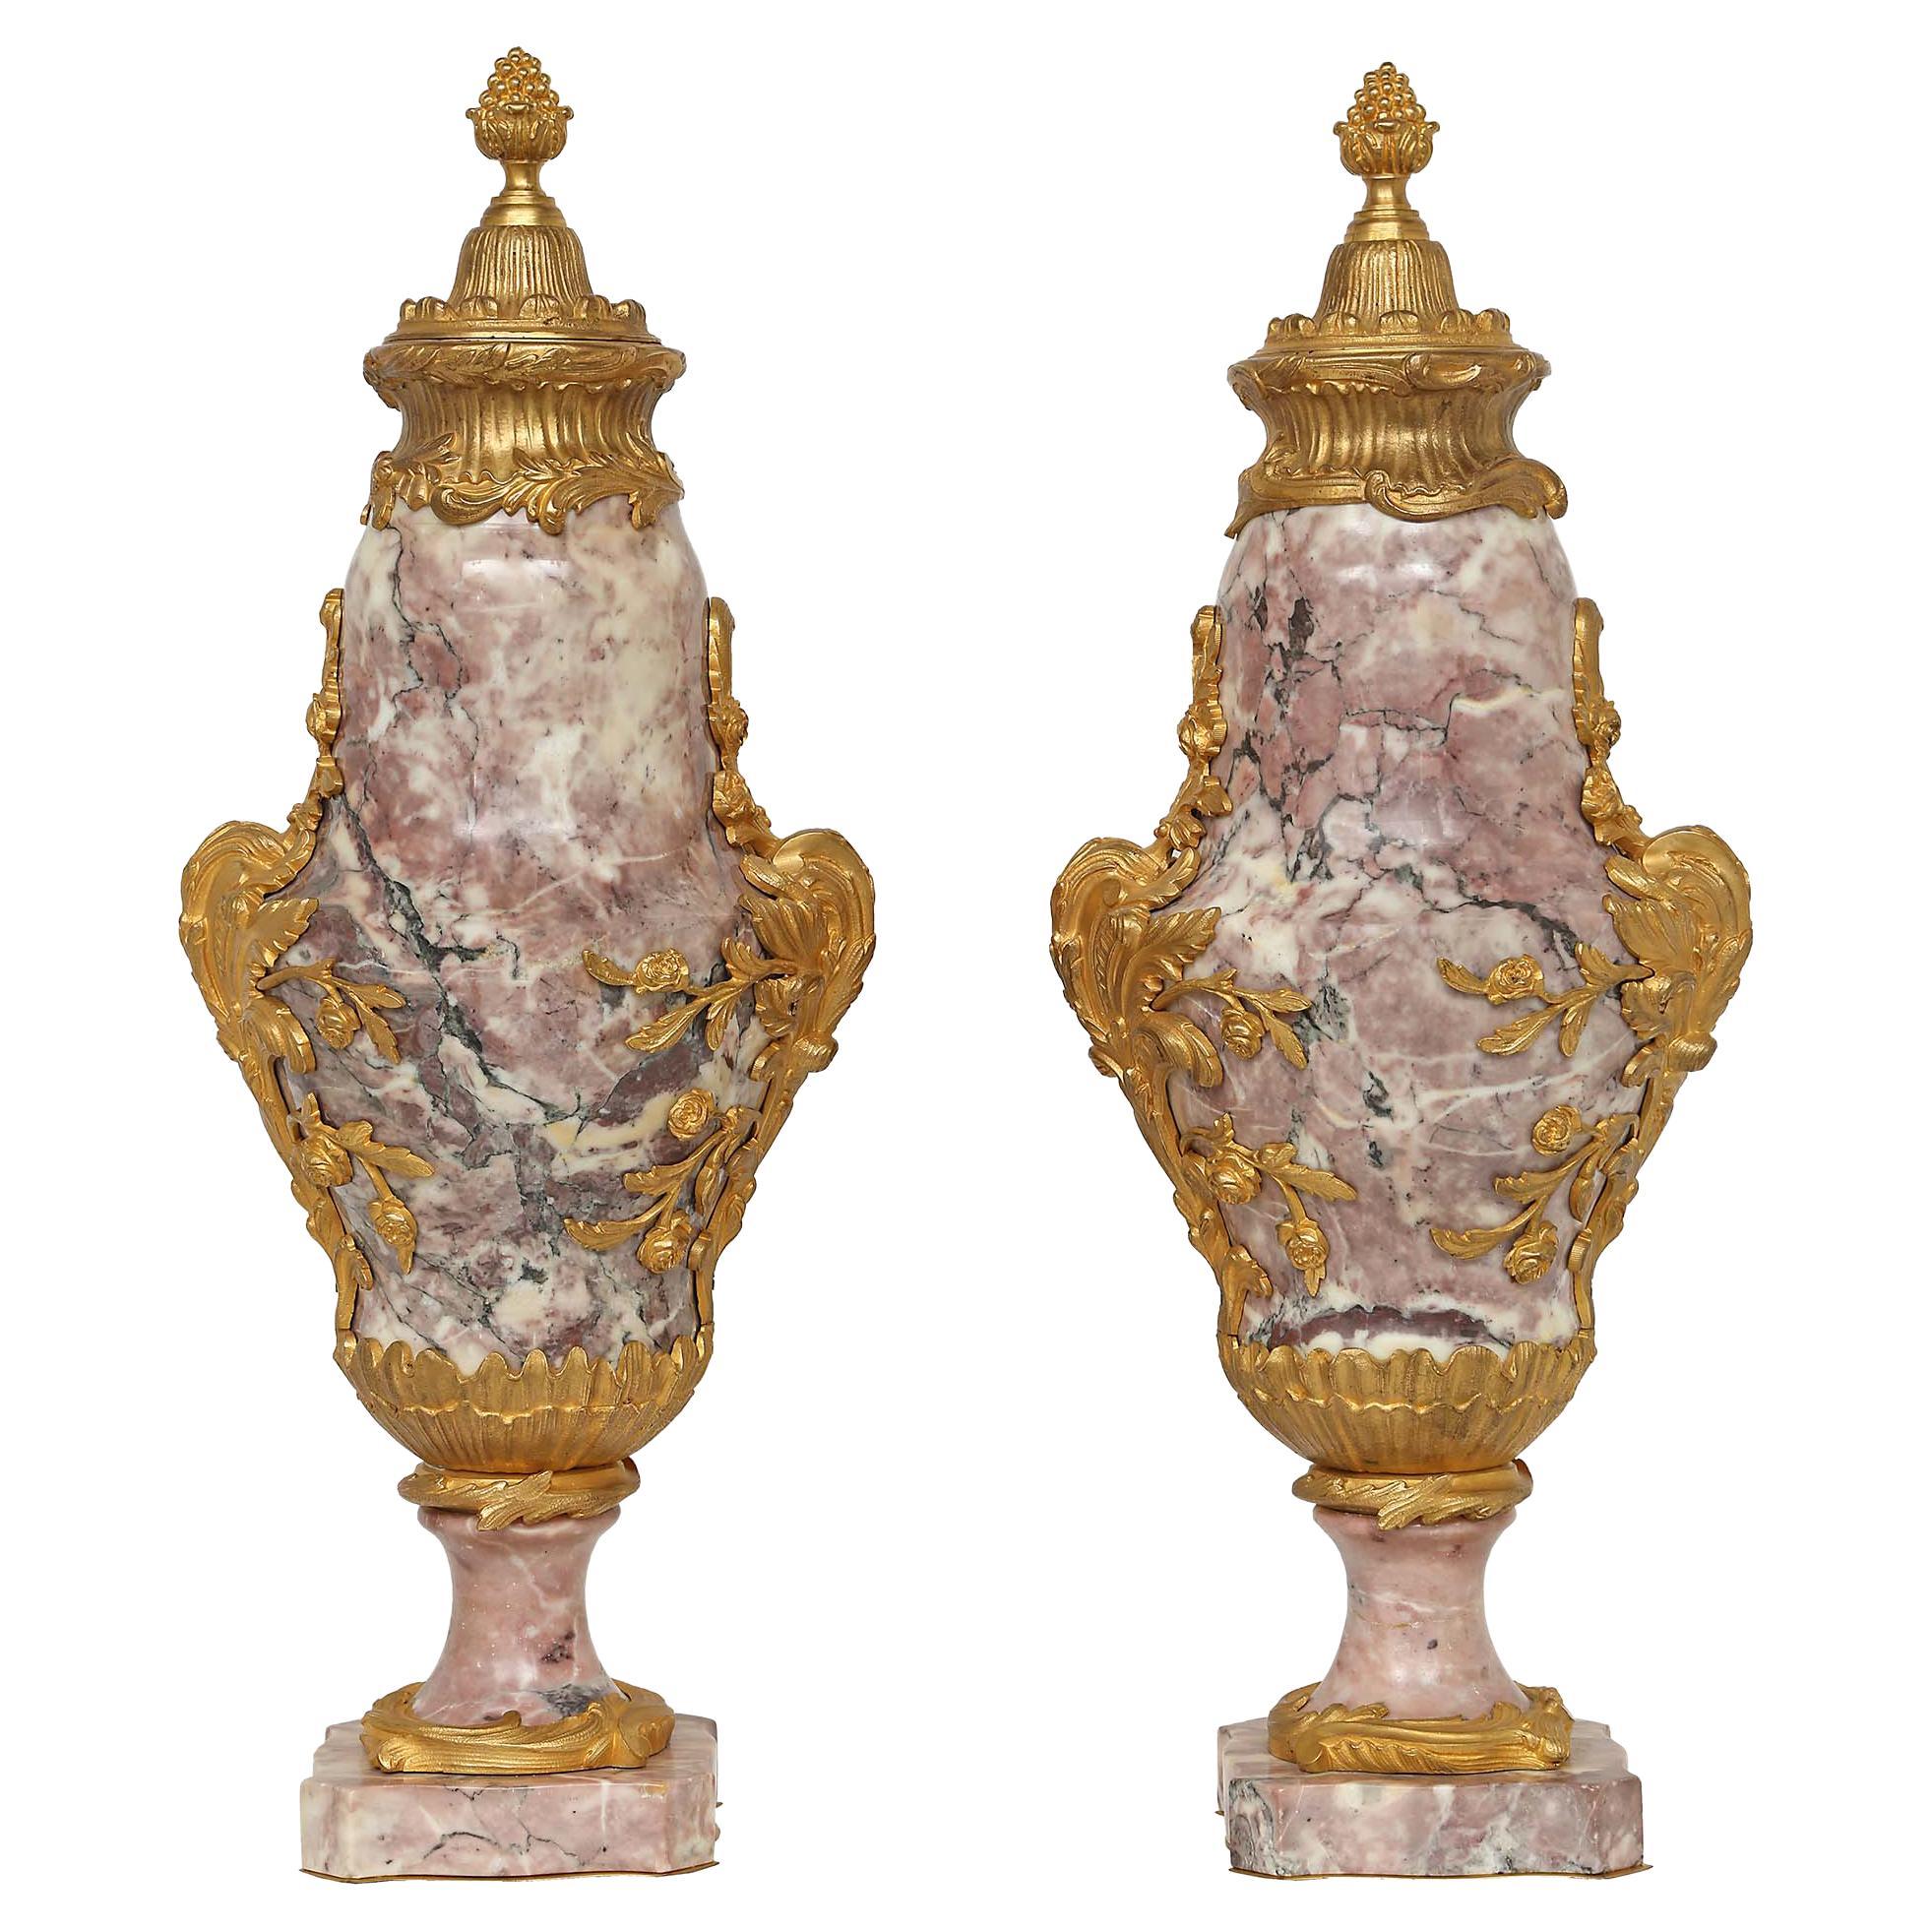 Cassolettes françaises de style Louis XV du milieu du XIXe siècle en bronze doré et marbre